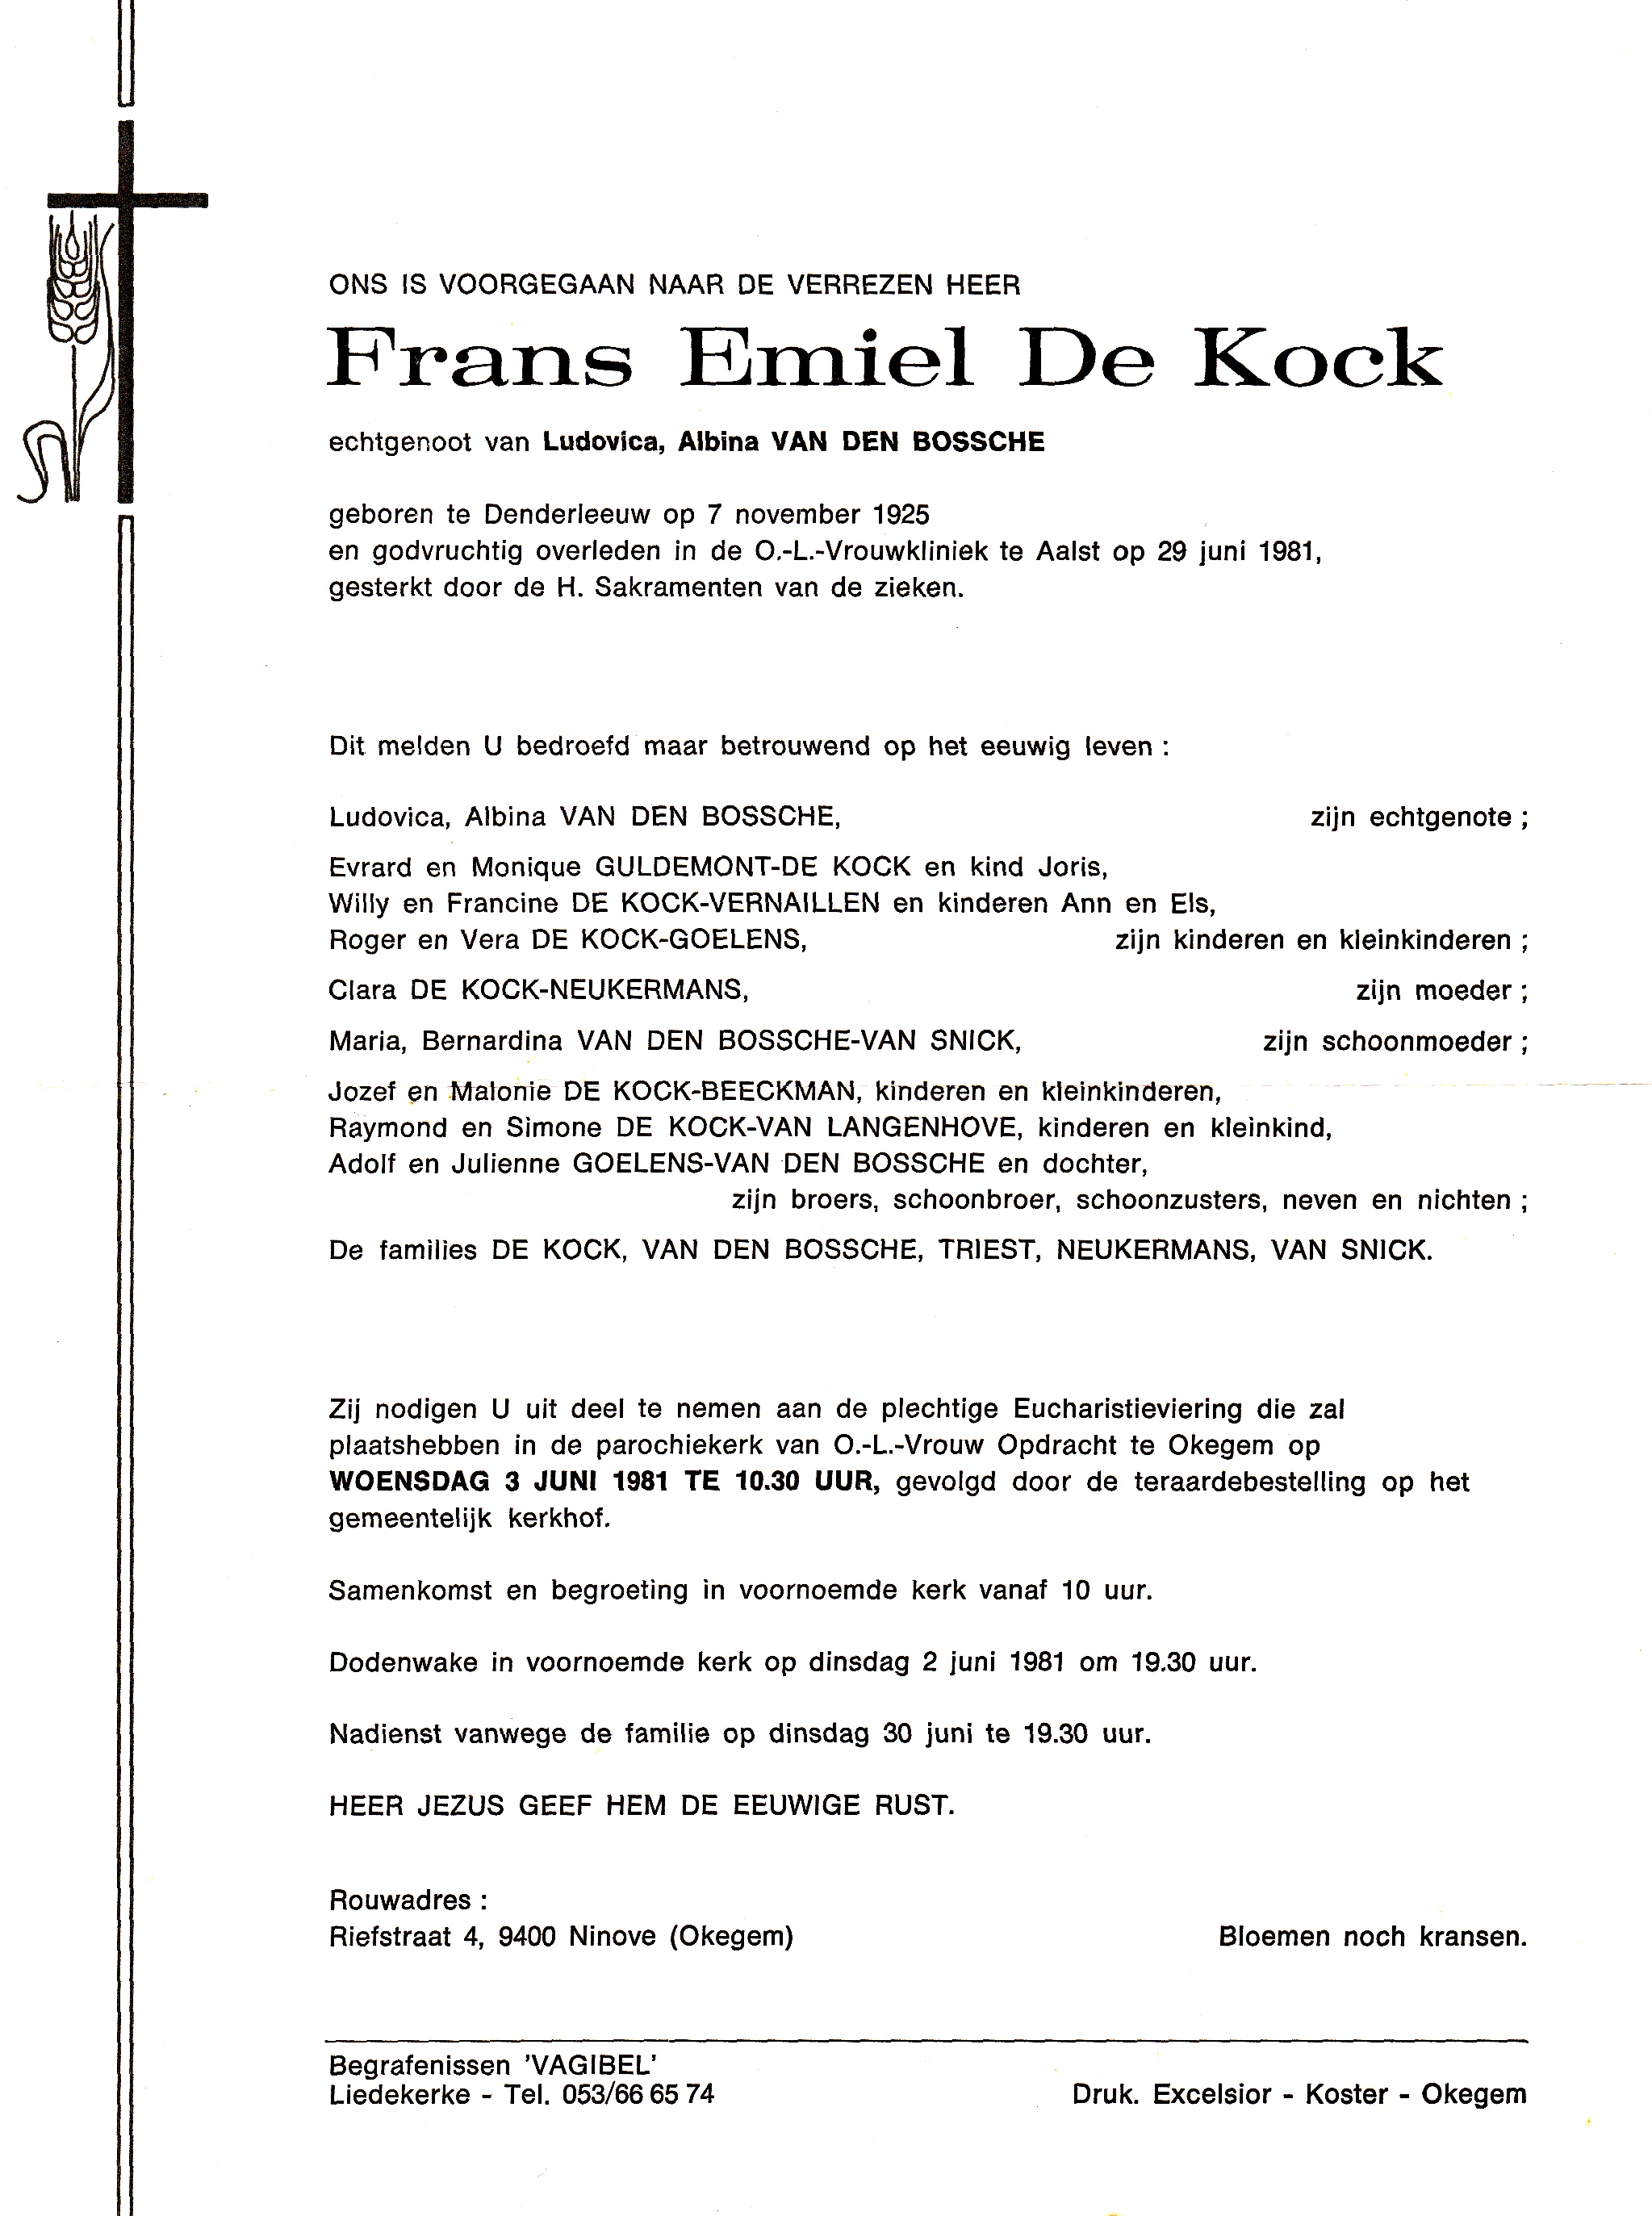 De Kock Frans Emiel 